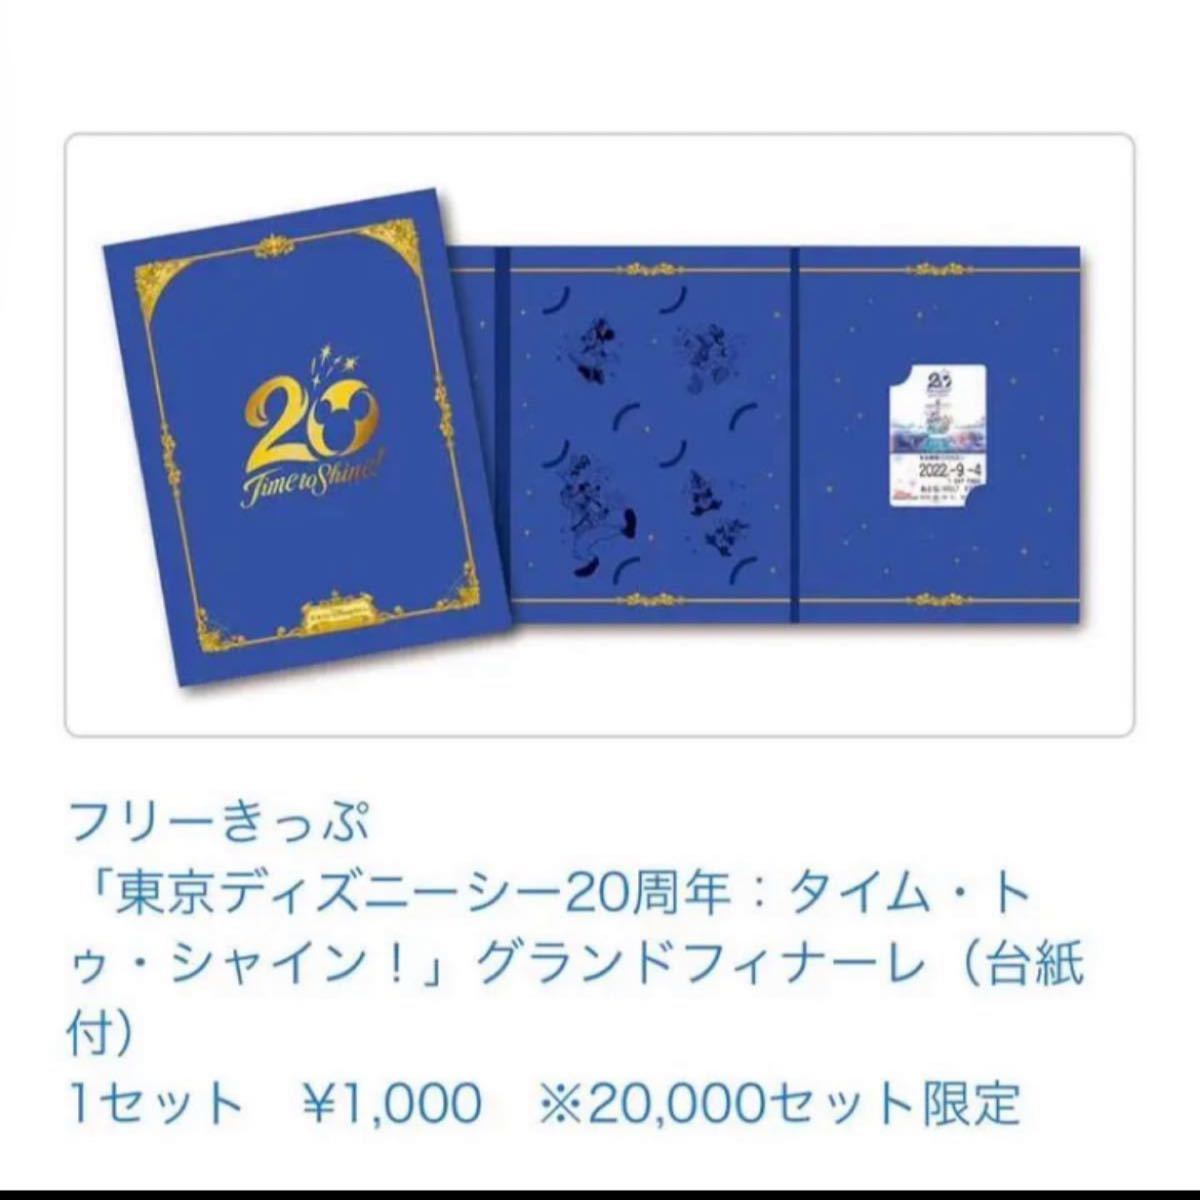 ディズニーシー 20周年 記念グッズ リゾラ フリーきっぷ